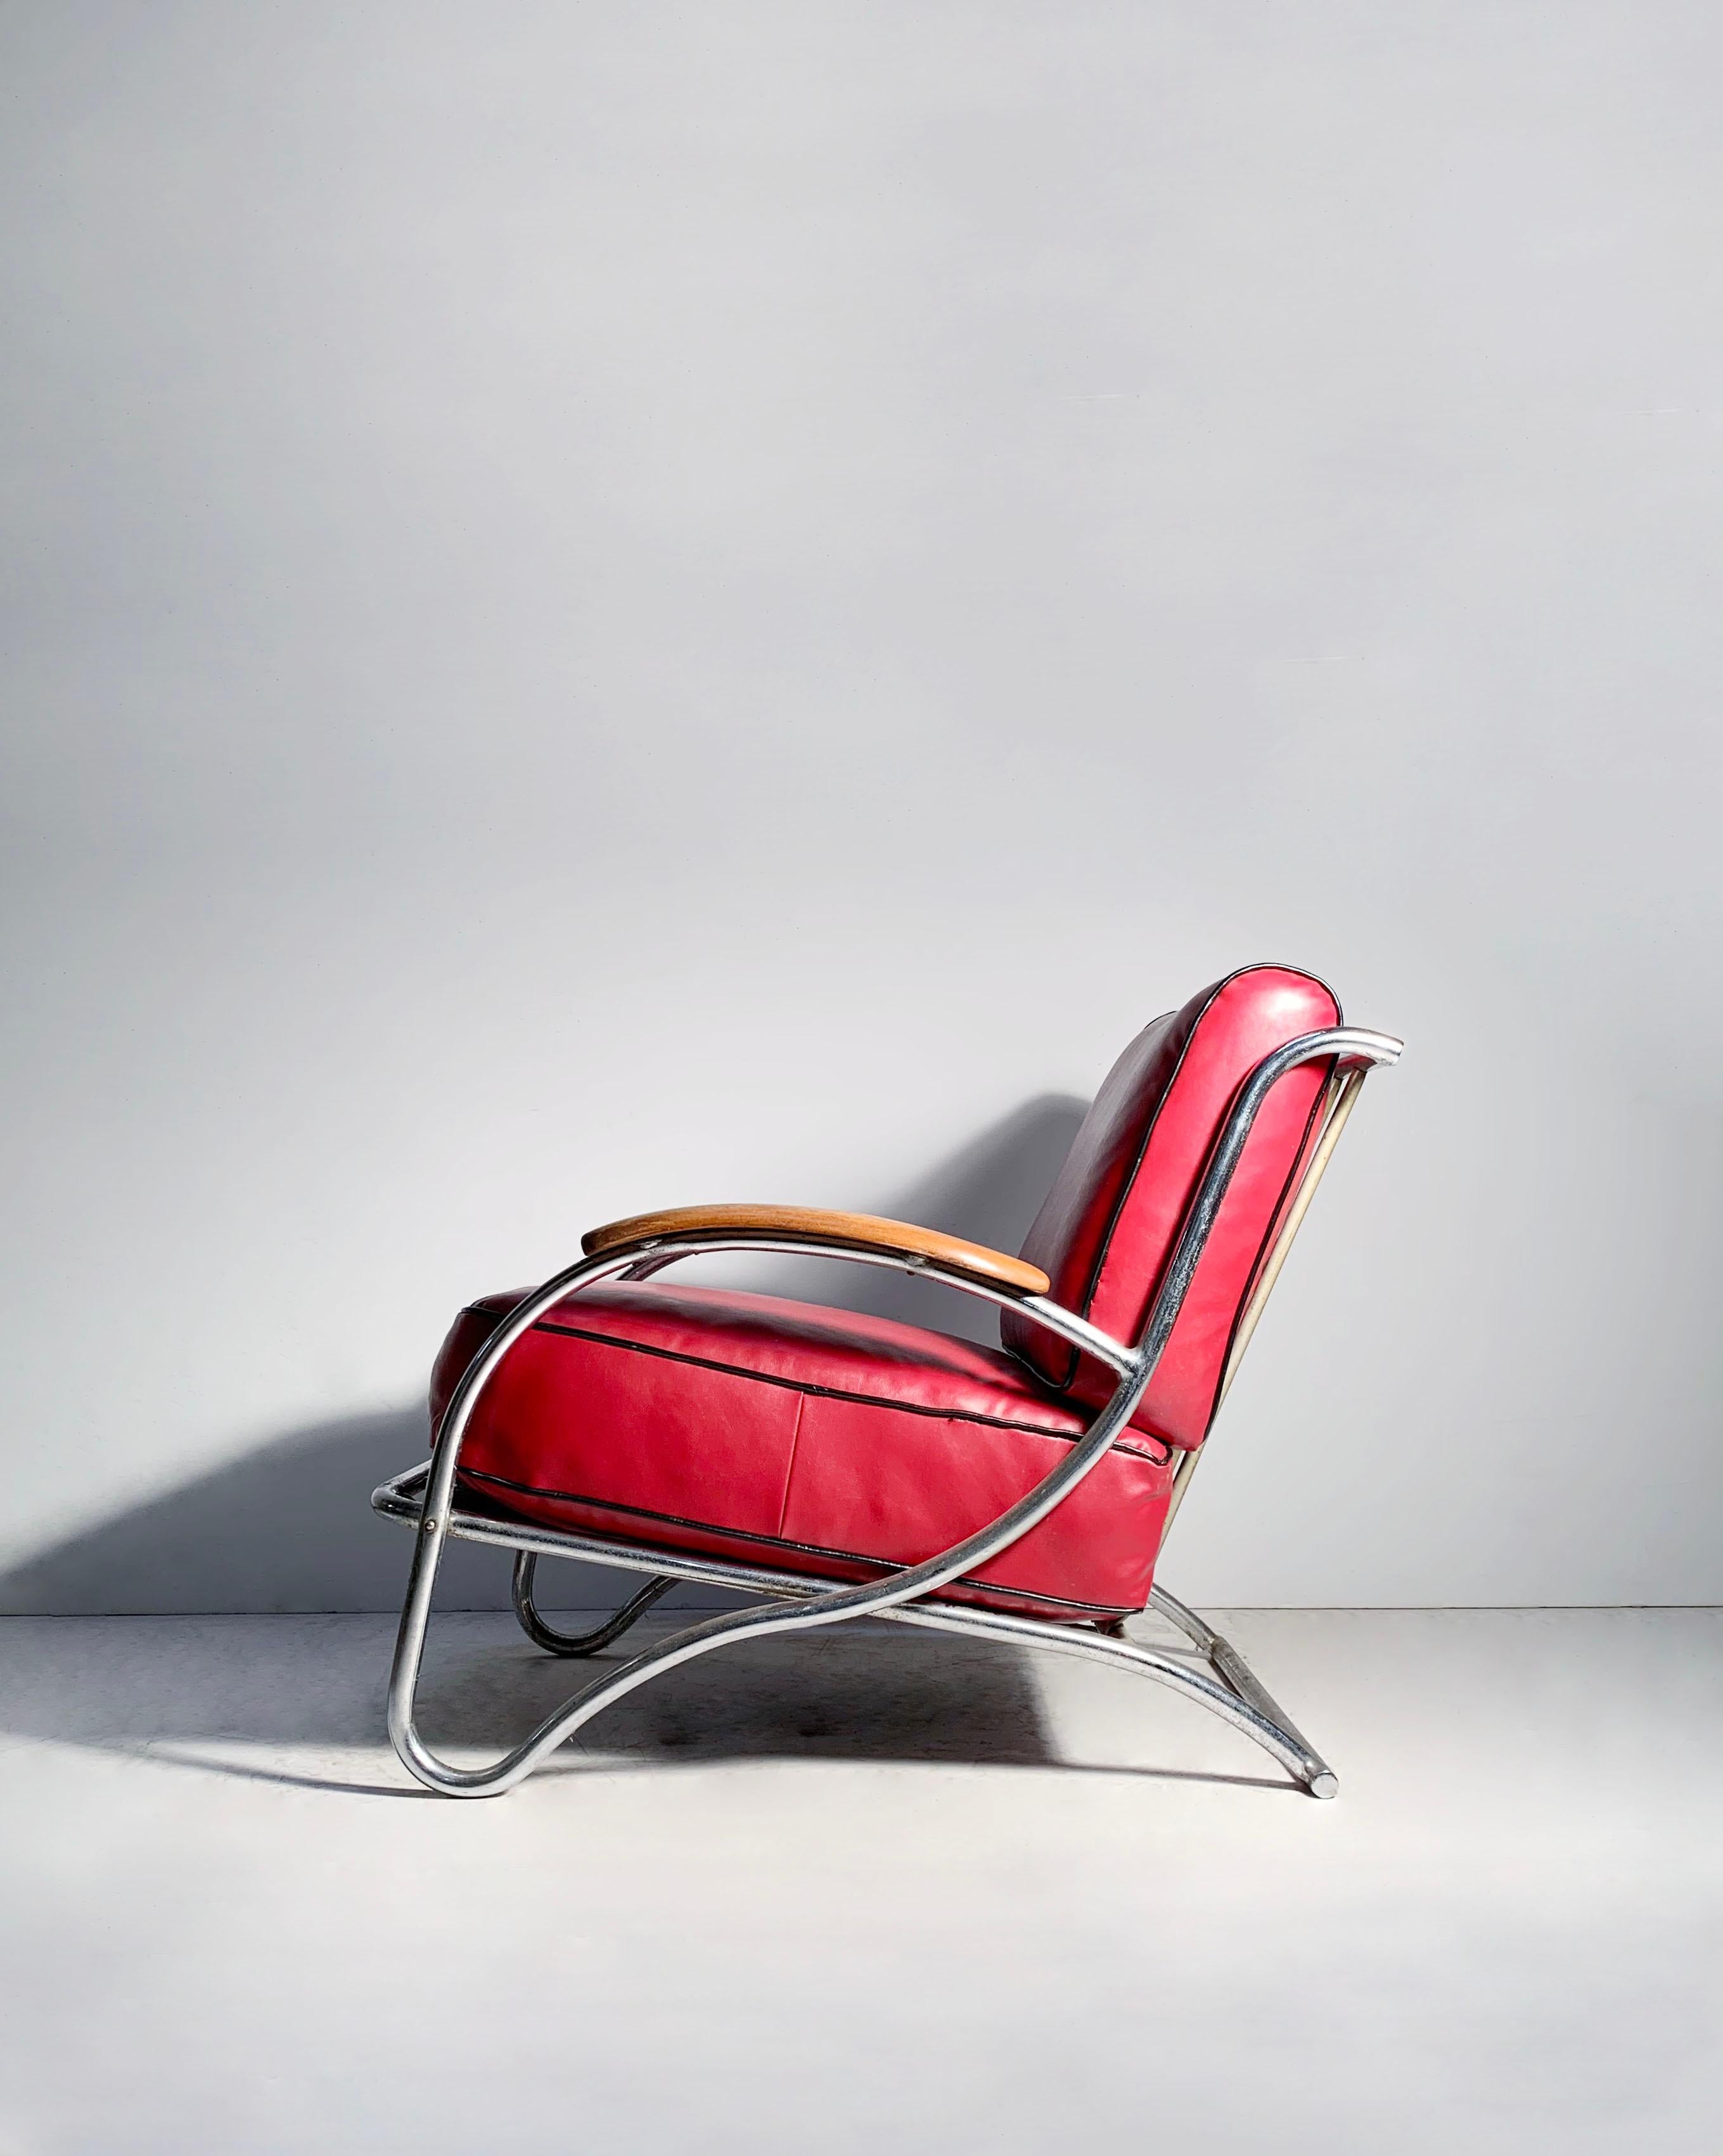 Rare Important Design Art Deco Lounge Chair by Kem Weber for Lloyds. Tout est d'origine et dans l'état où il a été trouvé. Rouge d'origine Rembourrage.  